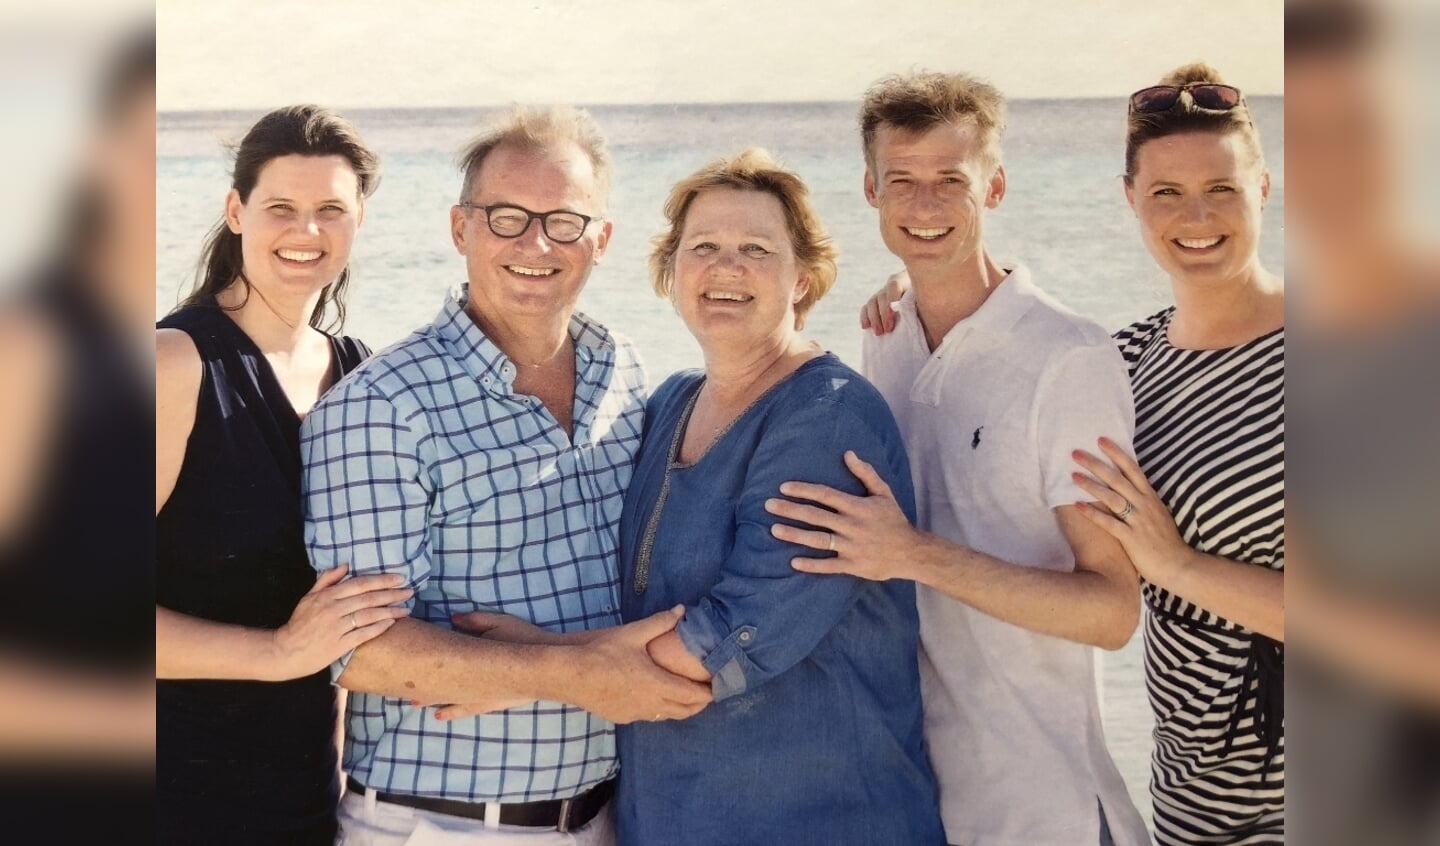 Rob en echtgenote Helma met hun drie kinderen Renate, Wouter en Susan. De foto is gemaakt in 2017 op Curaçao.